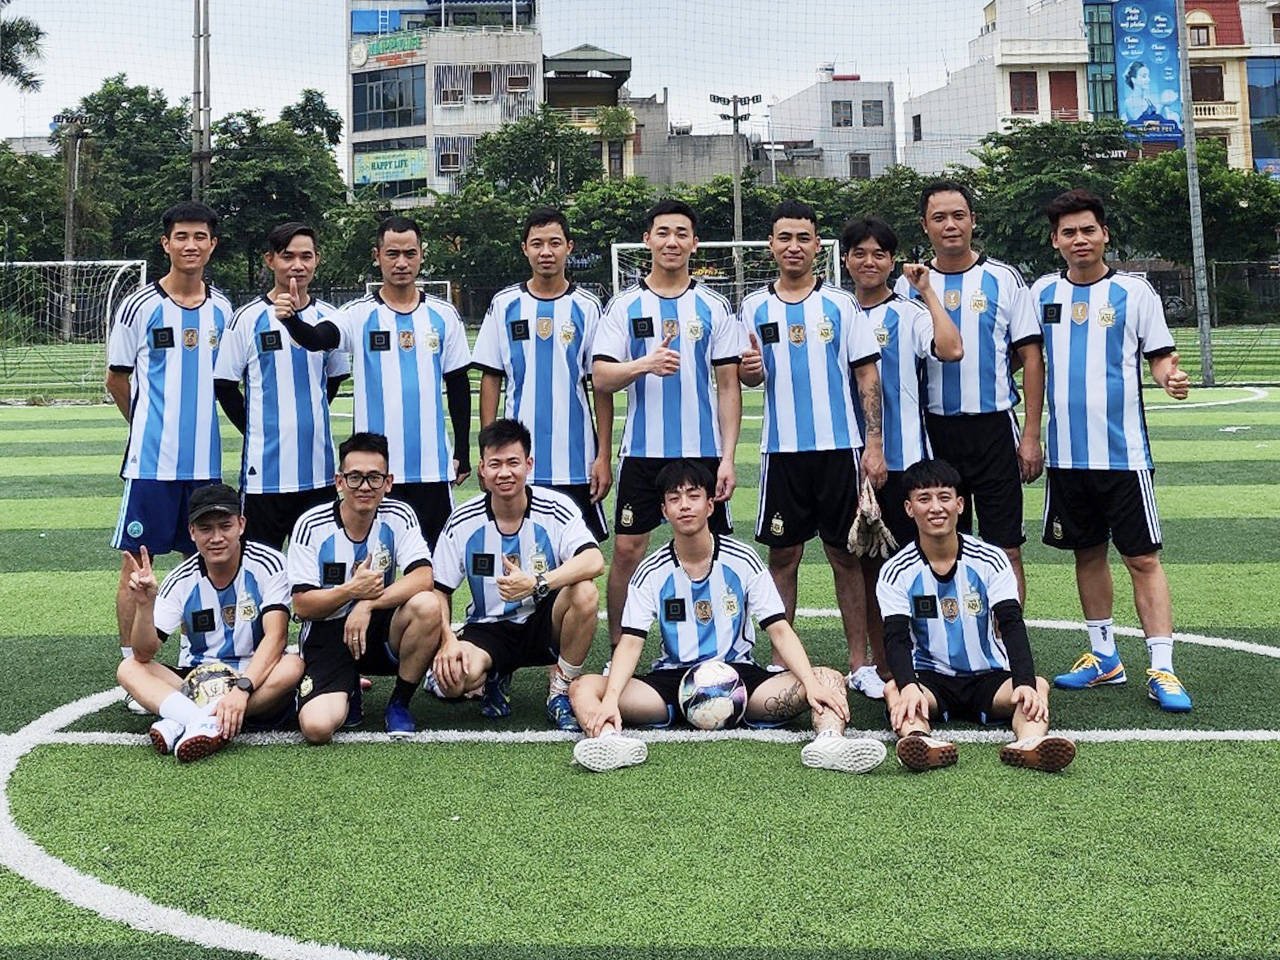 Company football team